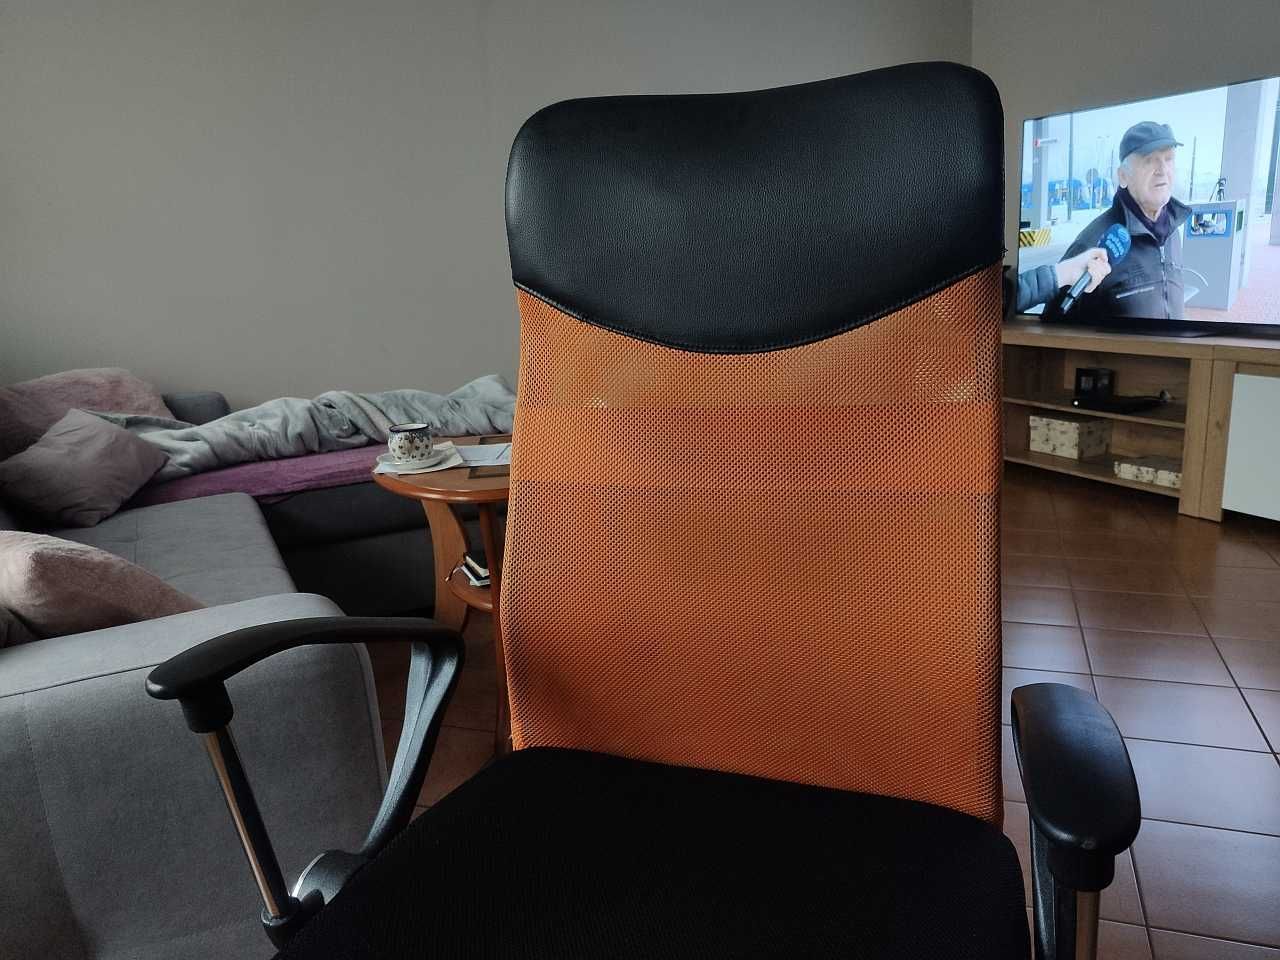 Krzesło biurowe fotel obrotowy